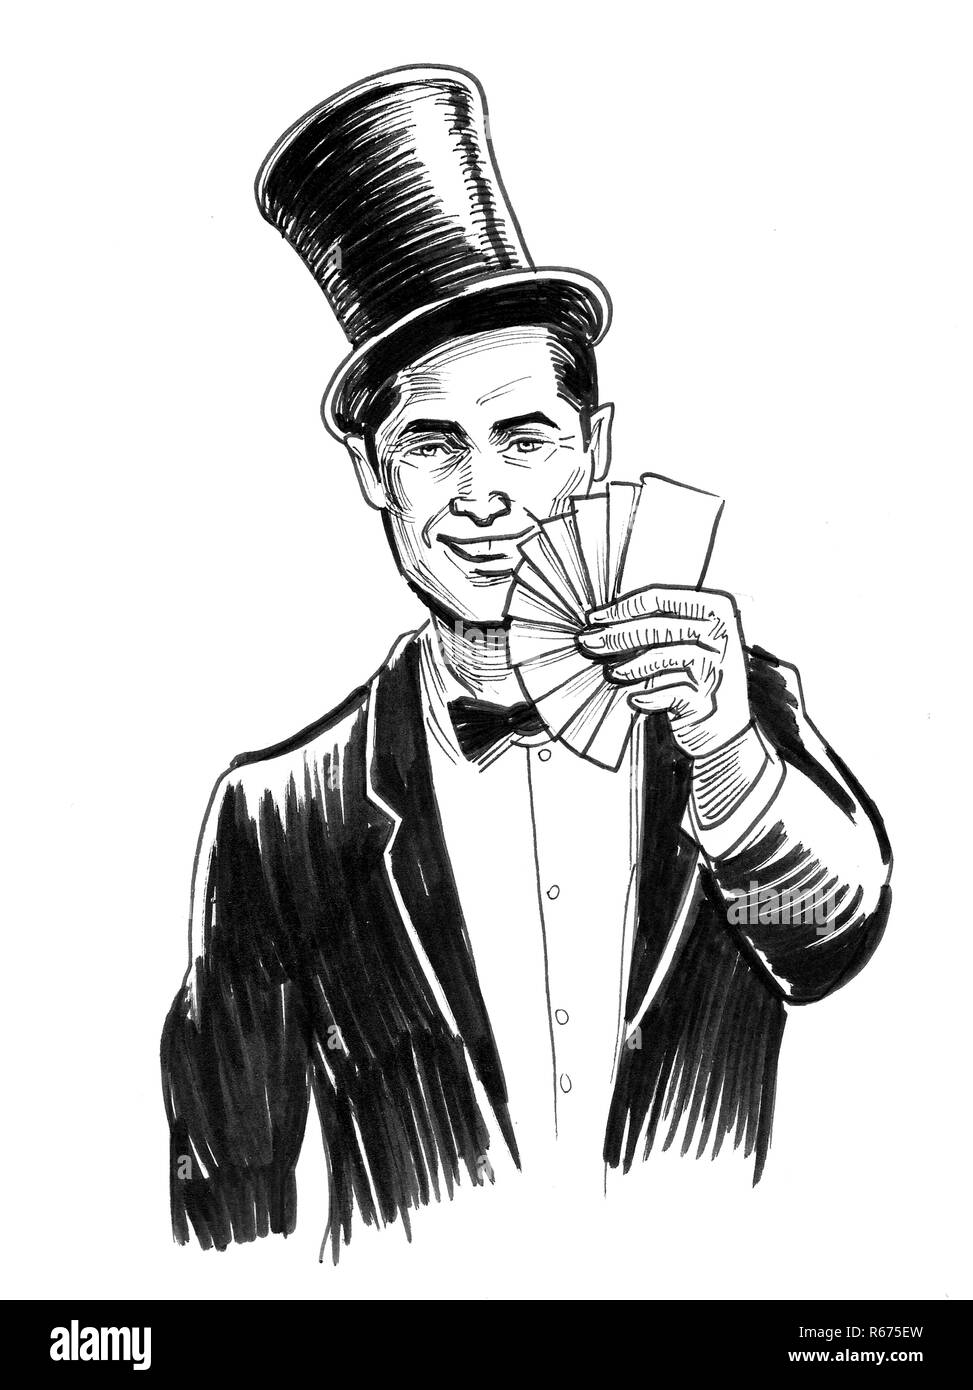 Spieler mit einem Deck Karten spielen. Tinte schwarz-weiss Zeichnung Stockfoto